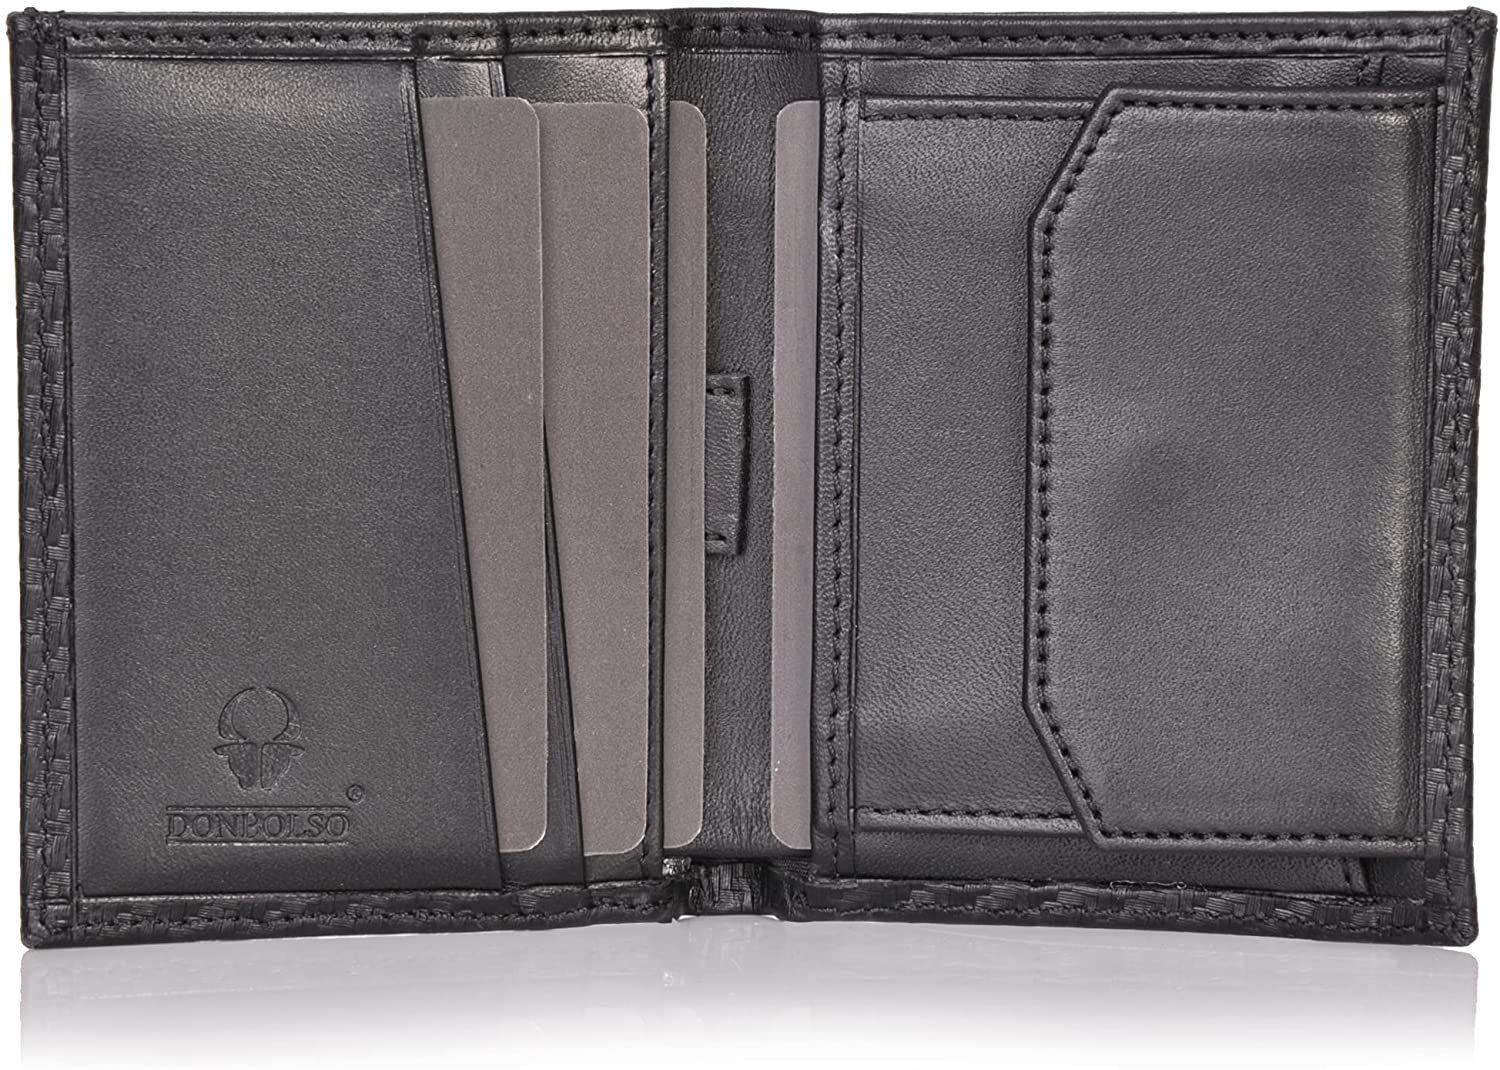 Donbolso Mini Geldbörse Slim RFID Schutz Mit Geldbeutel Vintage Kartenfächer, 6 Wallet Echtleder Schwarz Mnzfachvintage